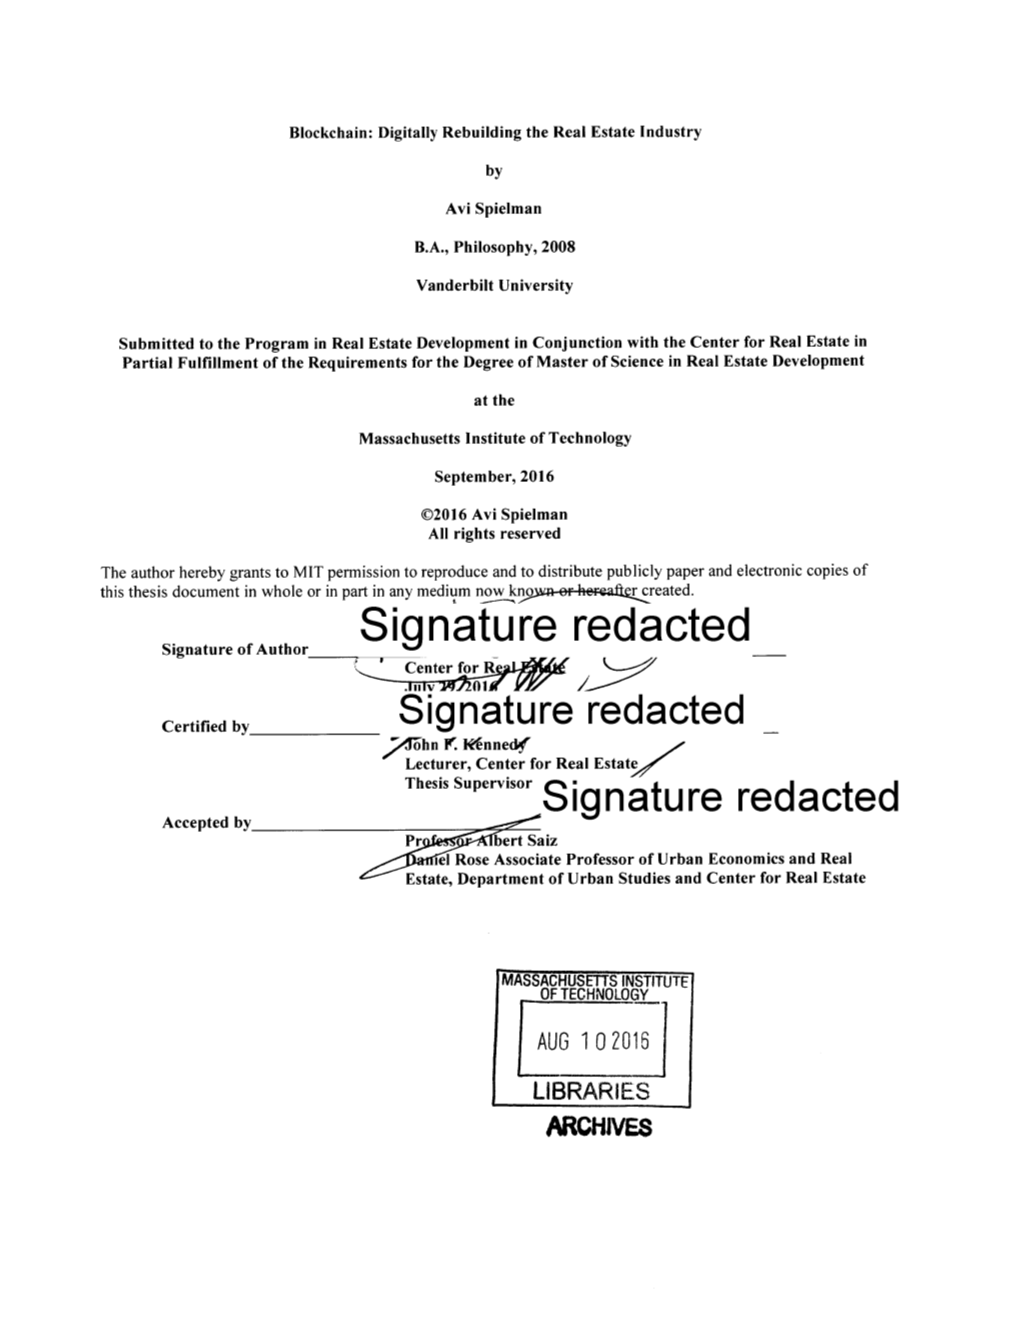 Signature Redacted__